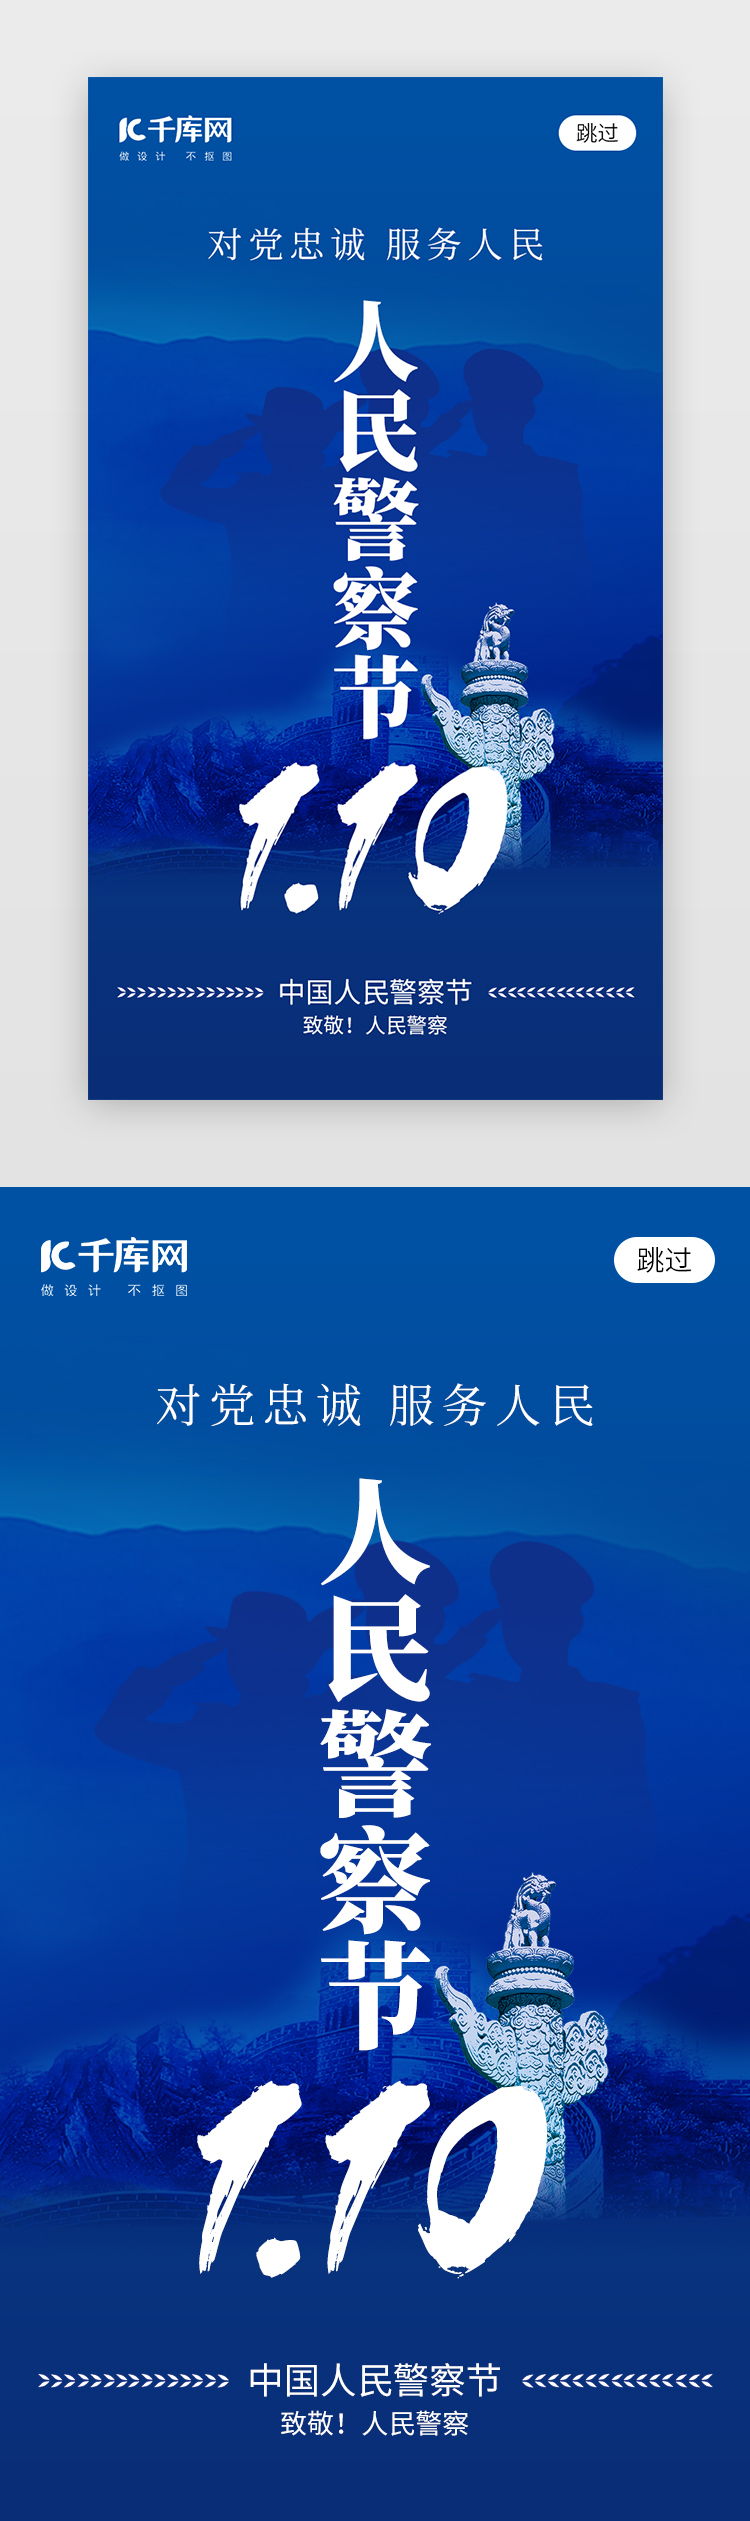 中国人民警察节app闪屏创意蓝色警察图片